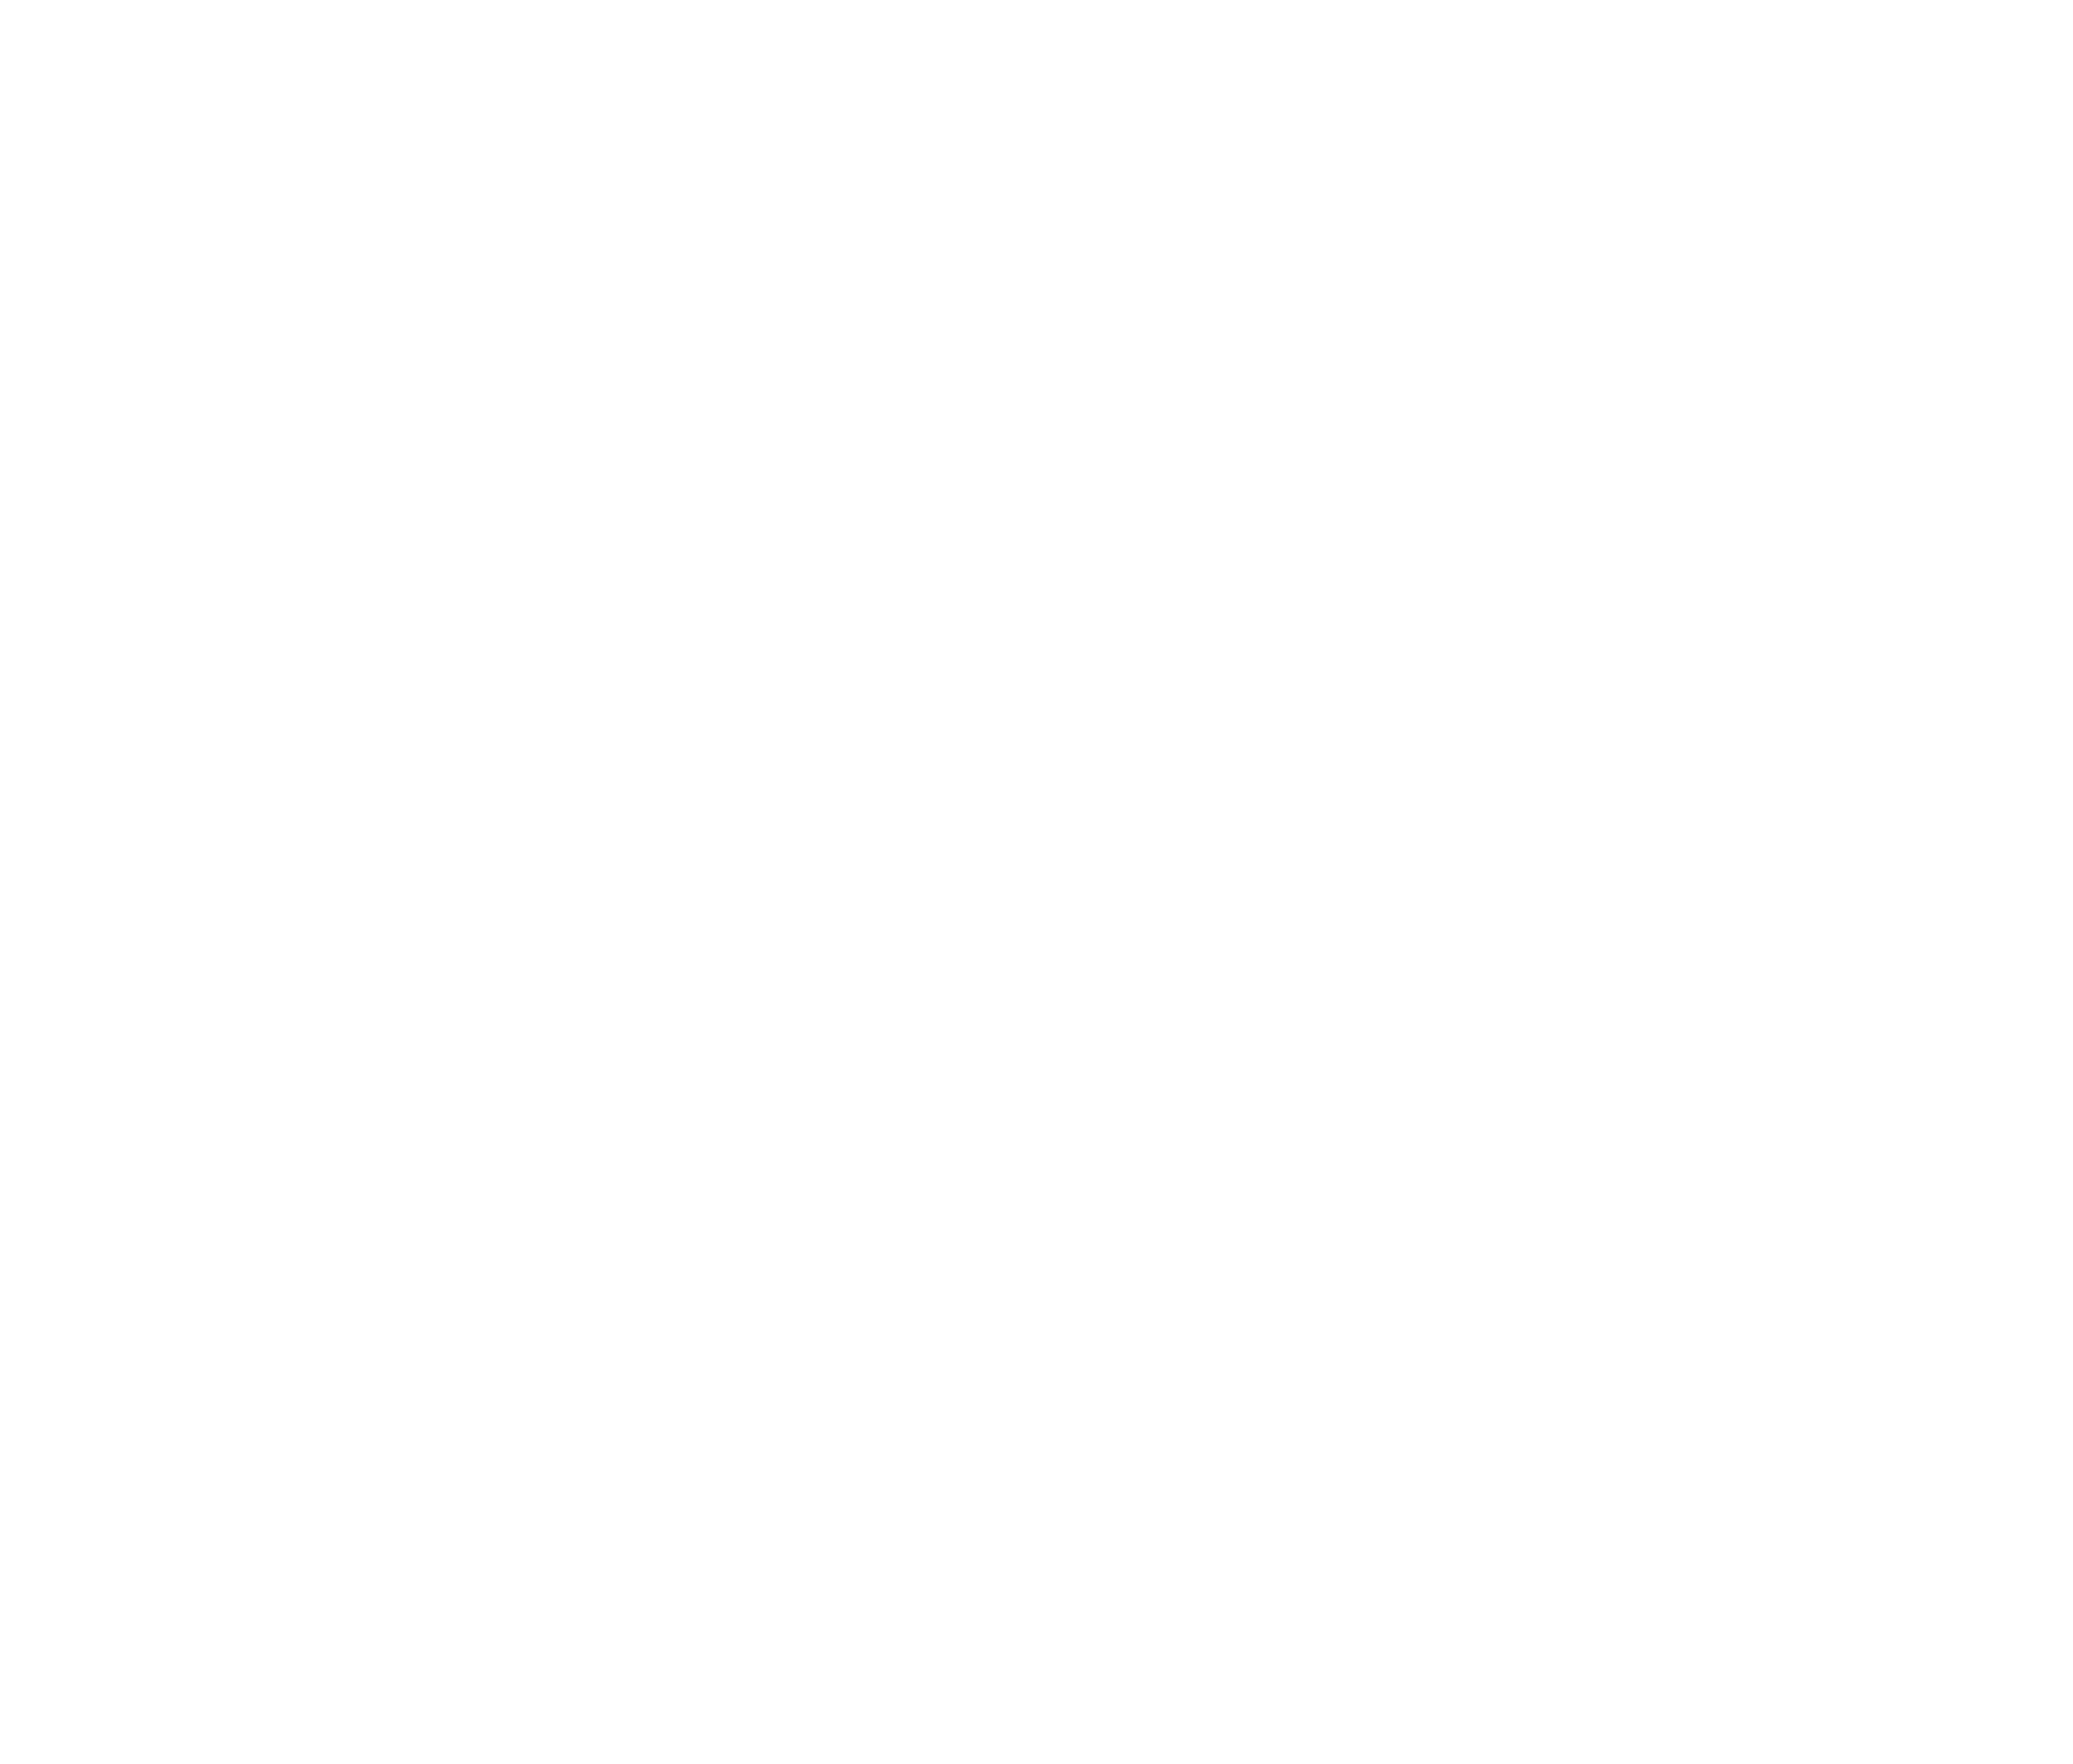 UN emblem white